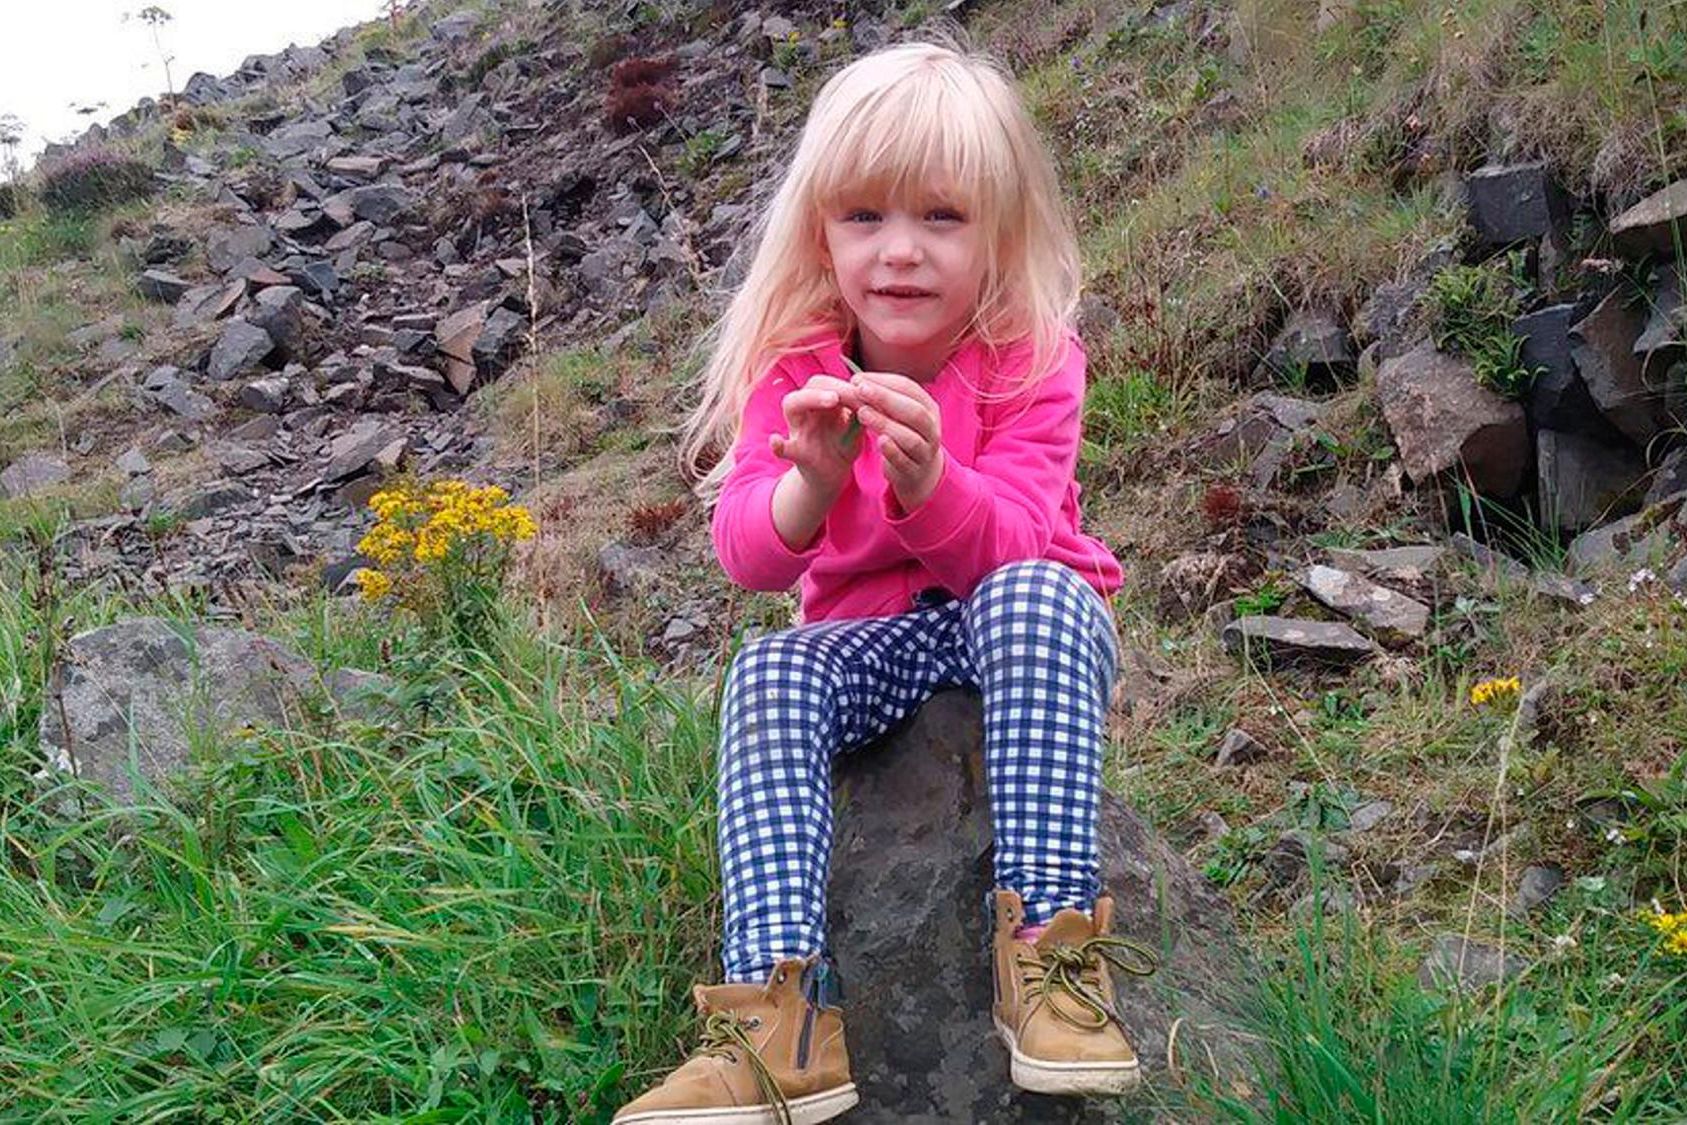 Nadia Zofia Kalinowska: L’homme qui a assassiné sa belle-fille (5 ans) dit en larmes au juge qu’il “aimait l’enfant comme un meilleur ami”